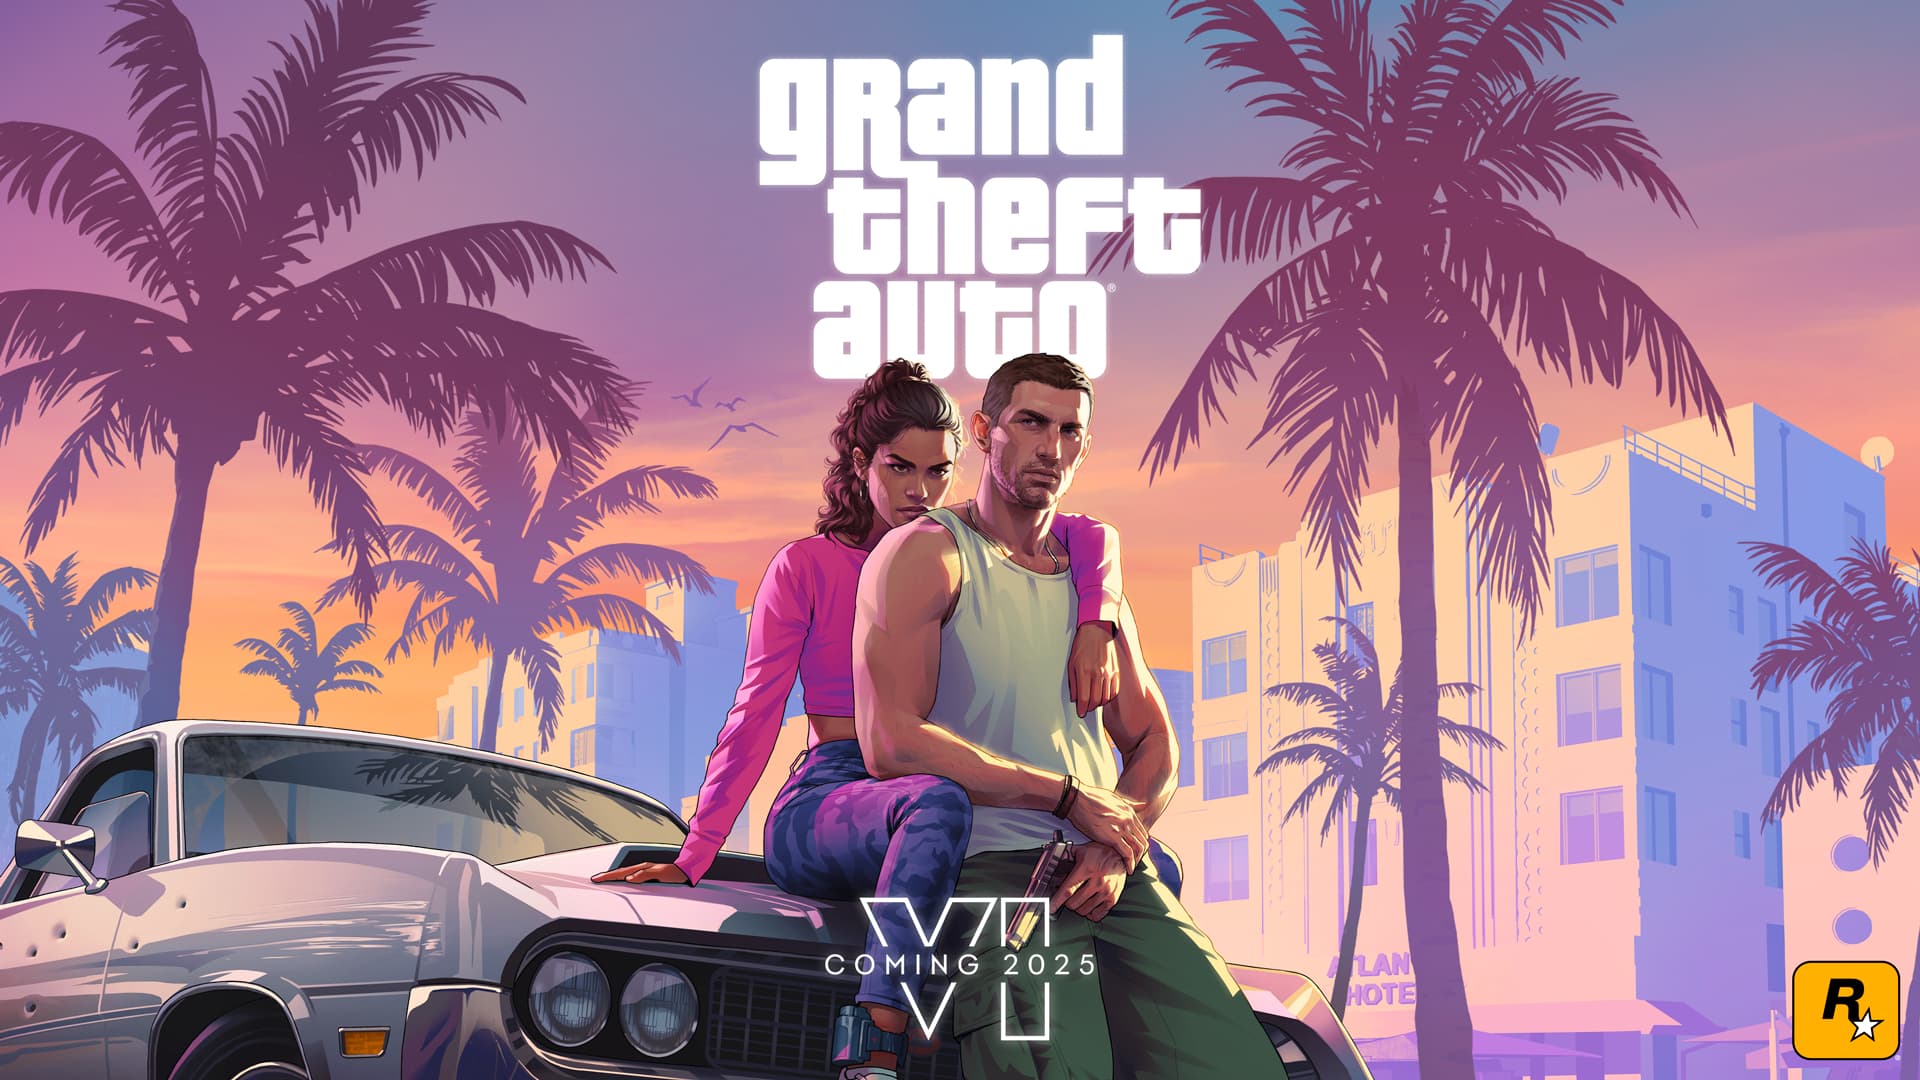 Visuel-officiel-de-Grand-Theft-Auto-VI-GTA-6-jeu-video-dont-la-sortie-est-prevue-pour-2025-1761508